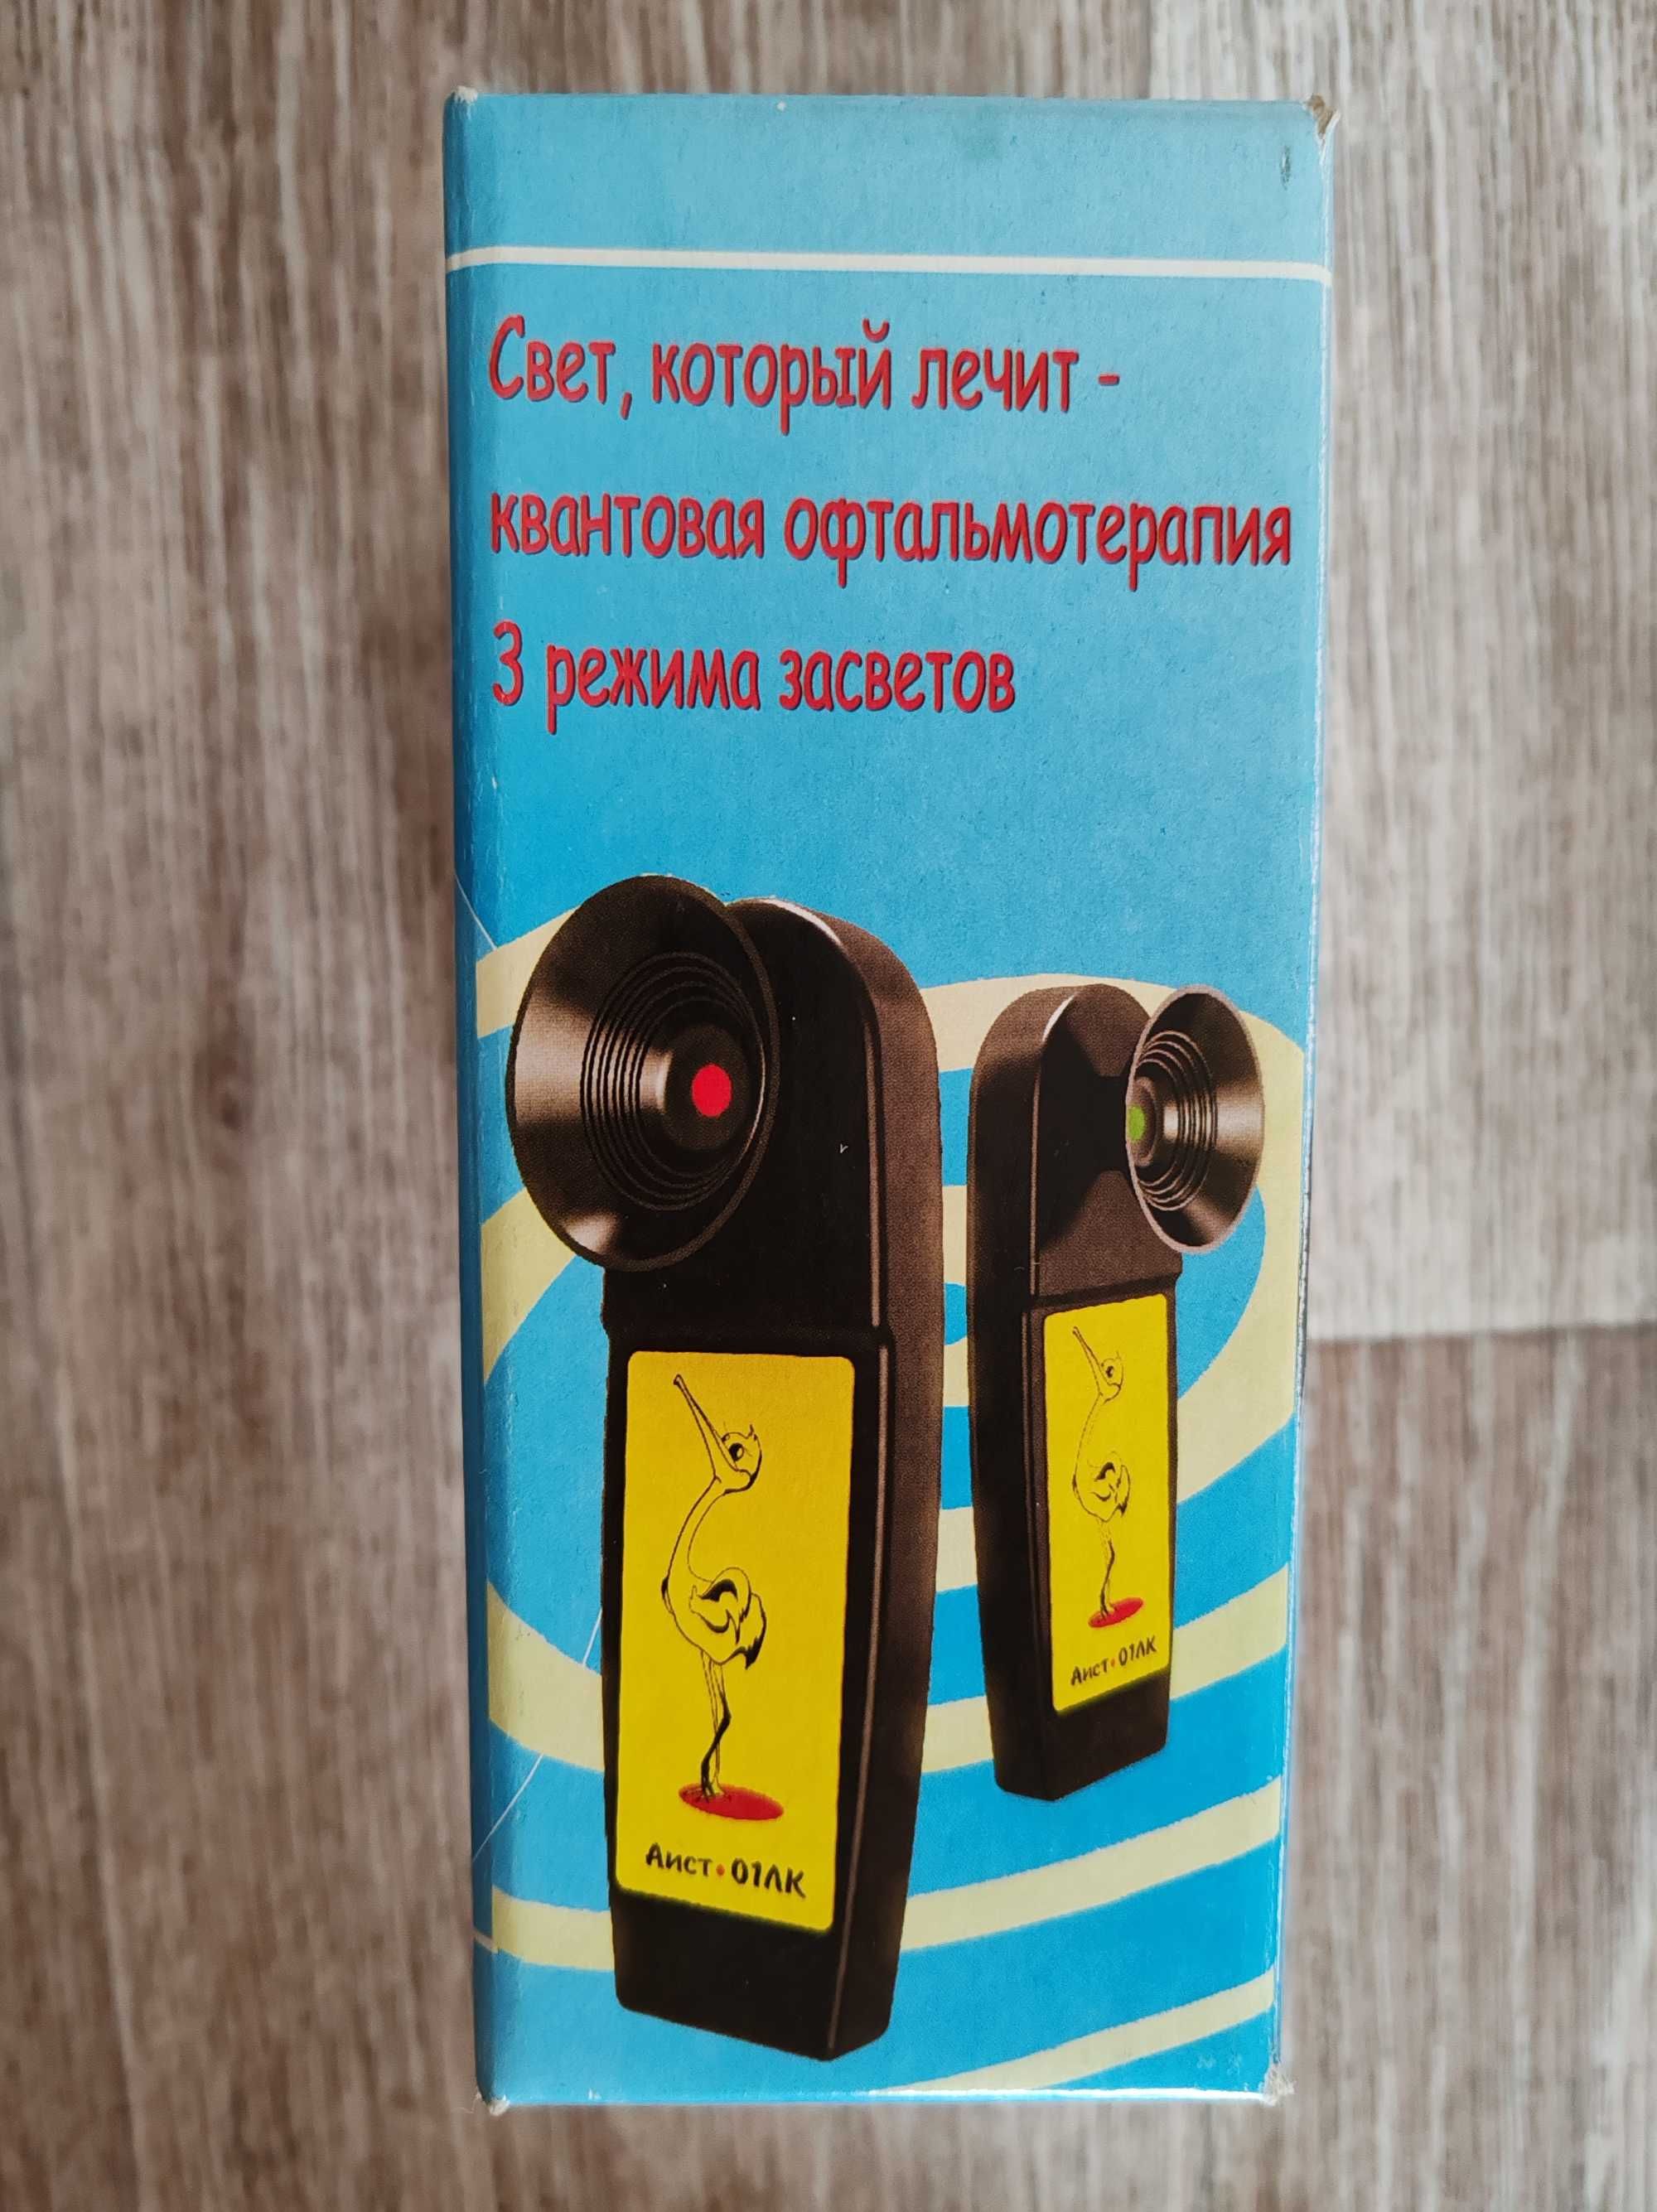 Аппарат для восстановления зрения Амблиостимулятор Аист-01ЛК Беларусь